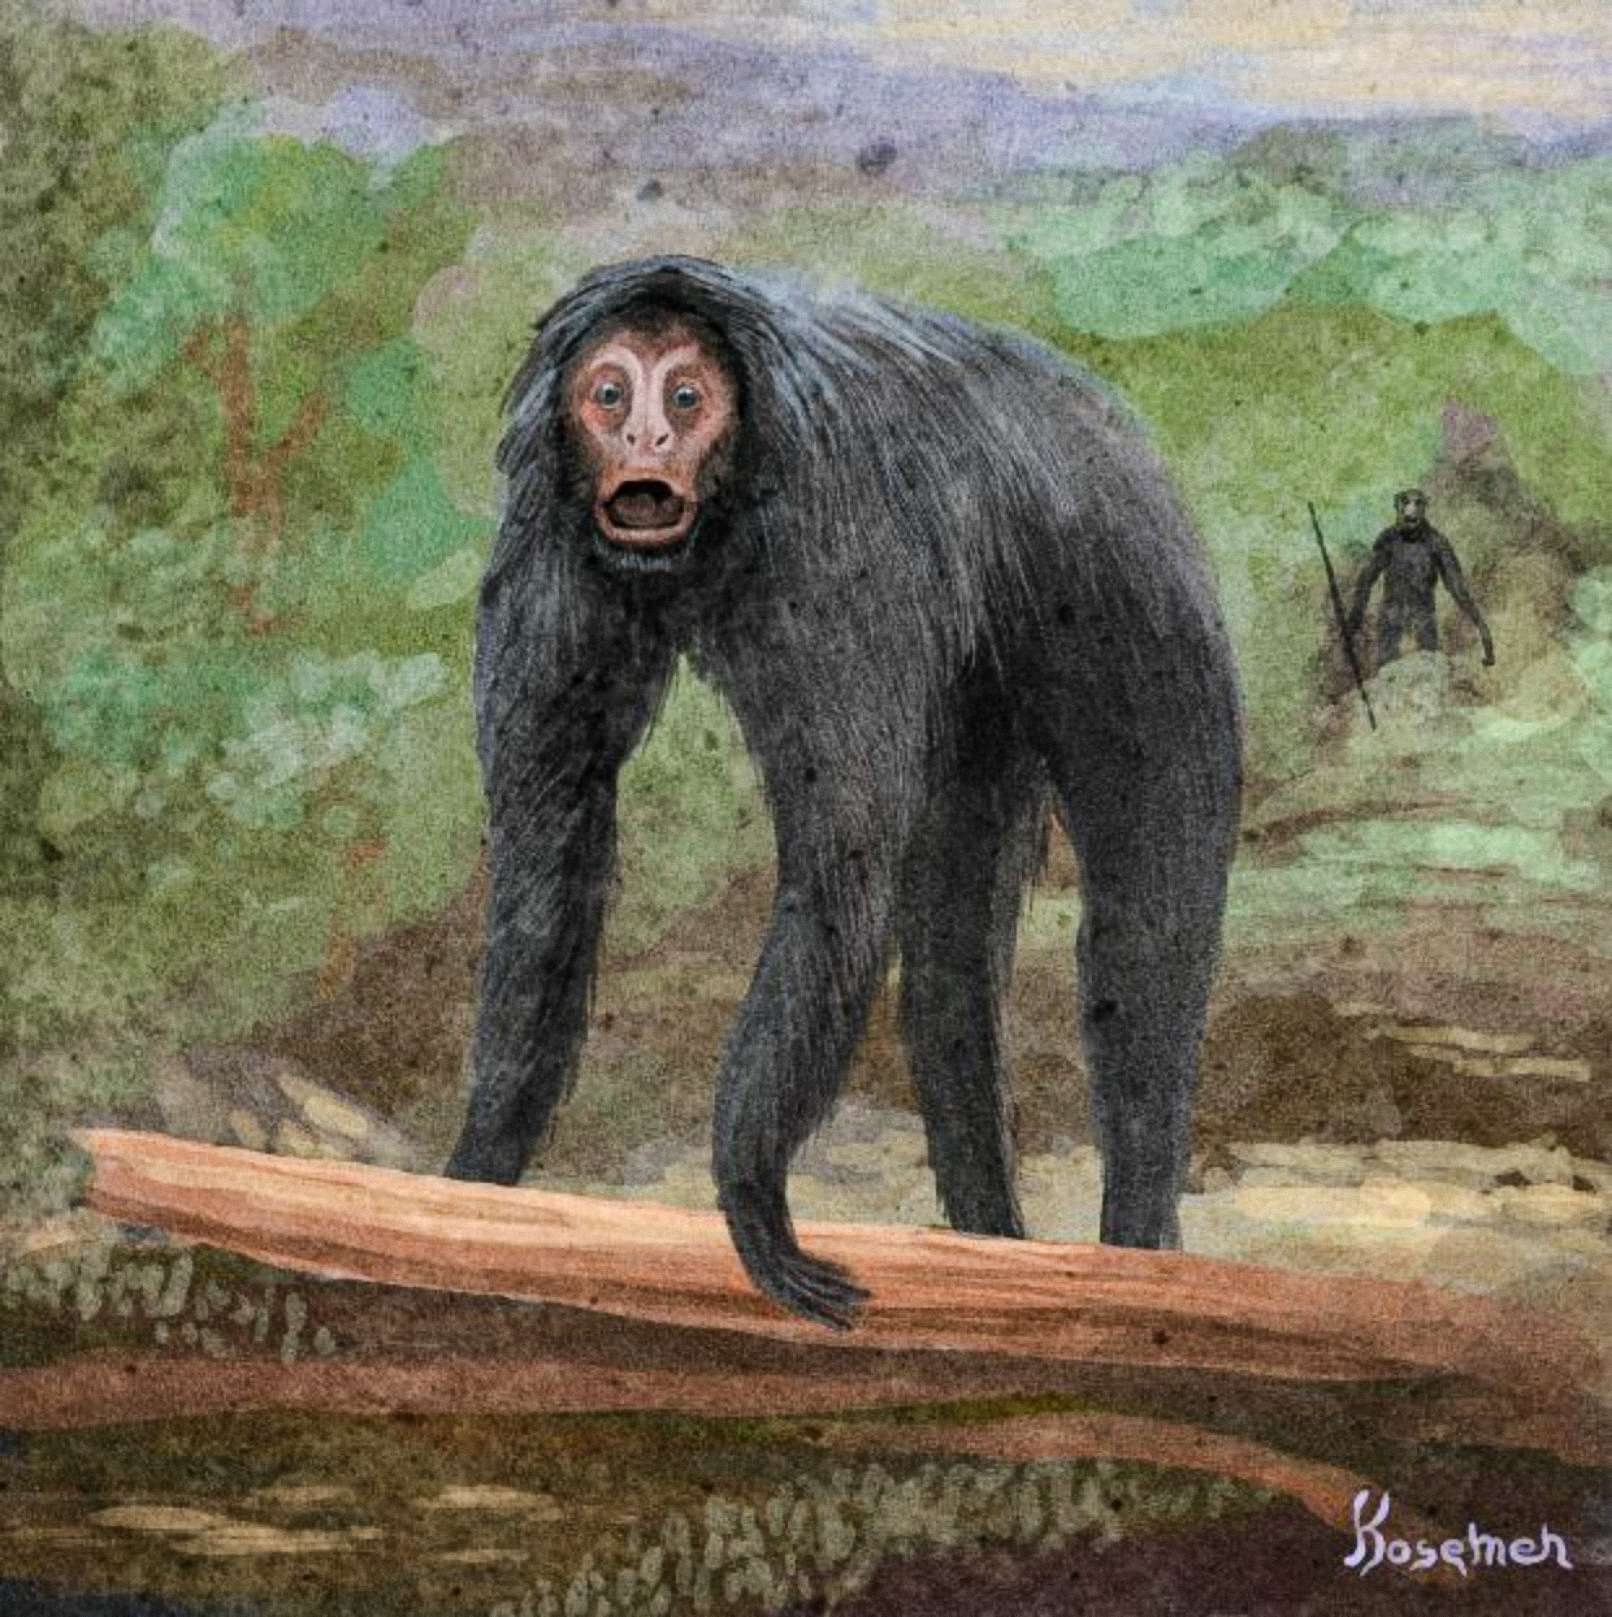 Een speculatieve interpretatie van de gebeurtenis, de andere primaat op de achterkant afgebeeld met een gereedschap (kunst door Kosemen)